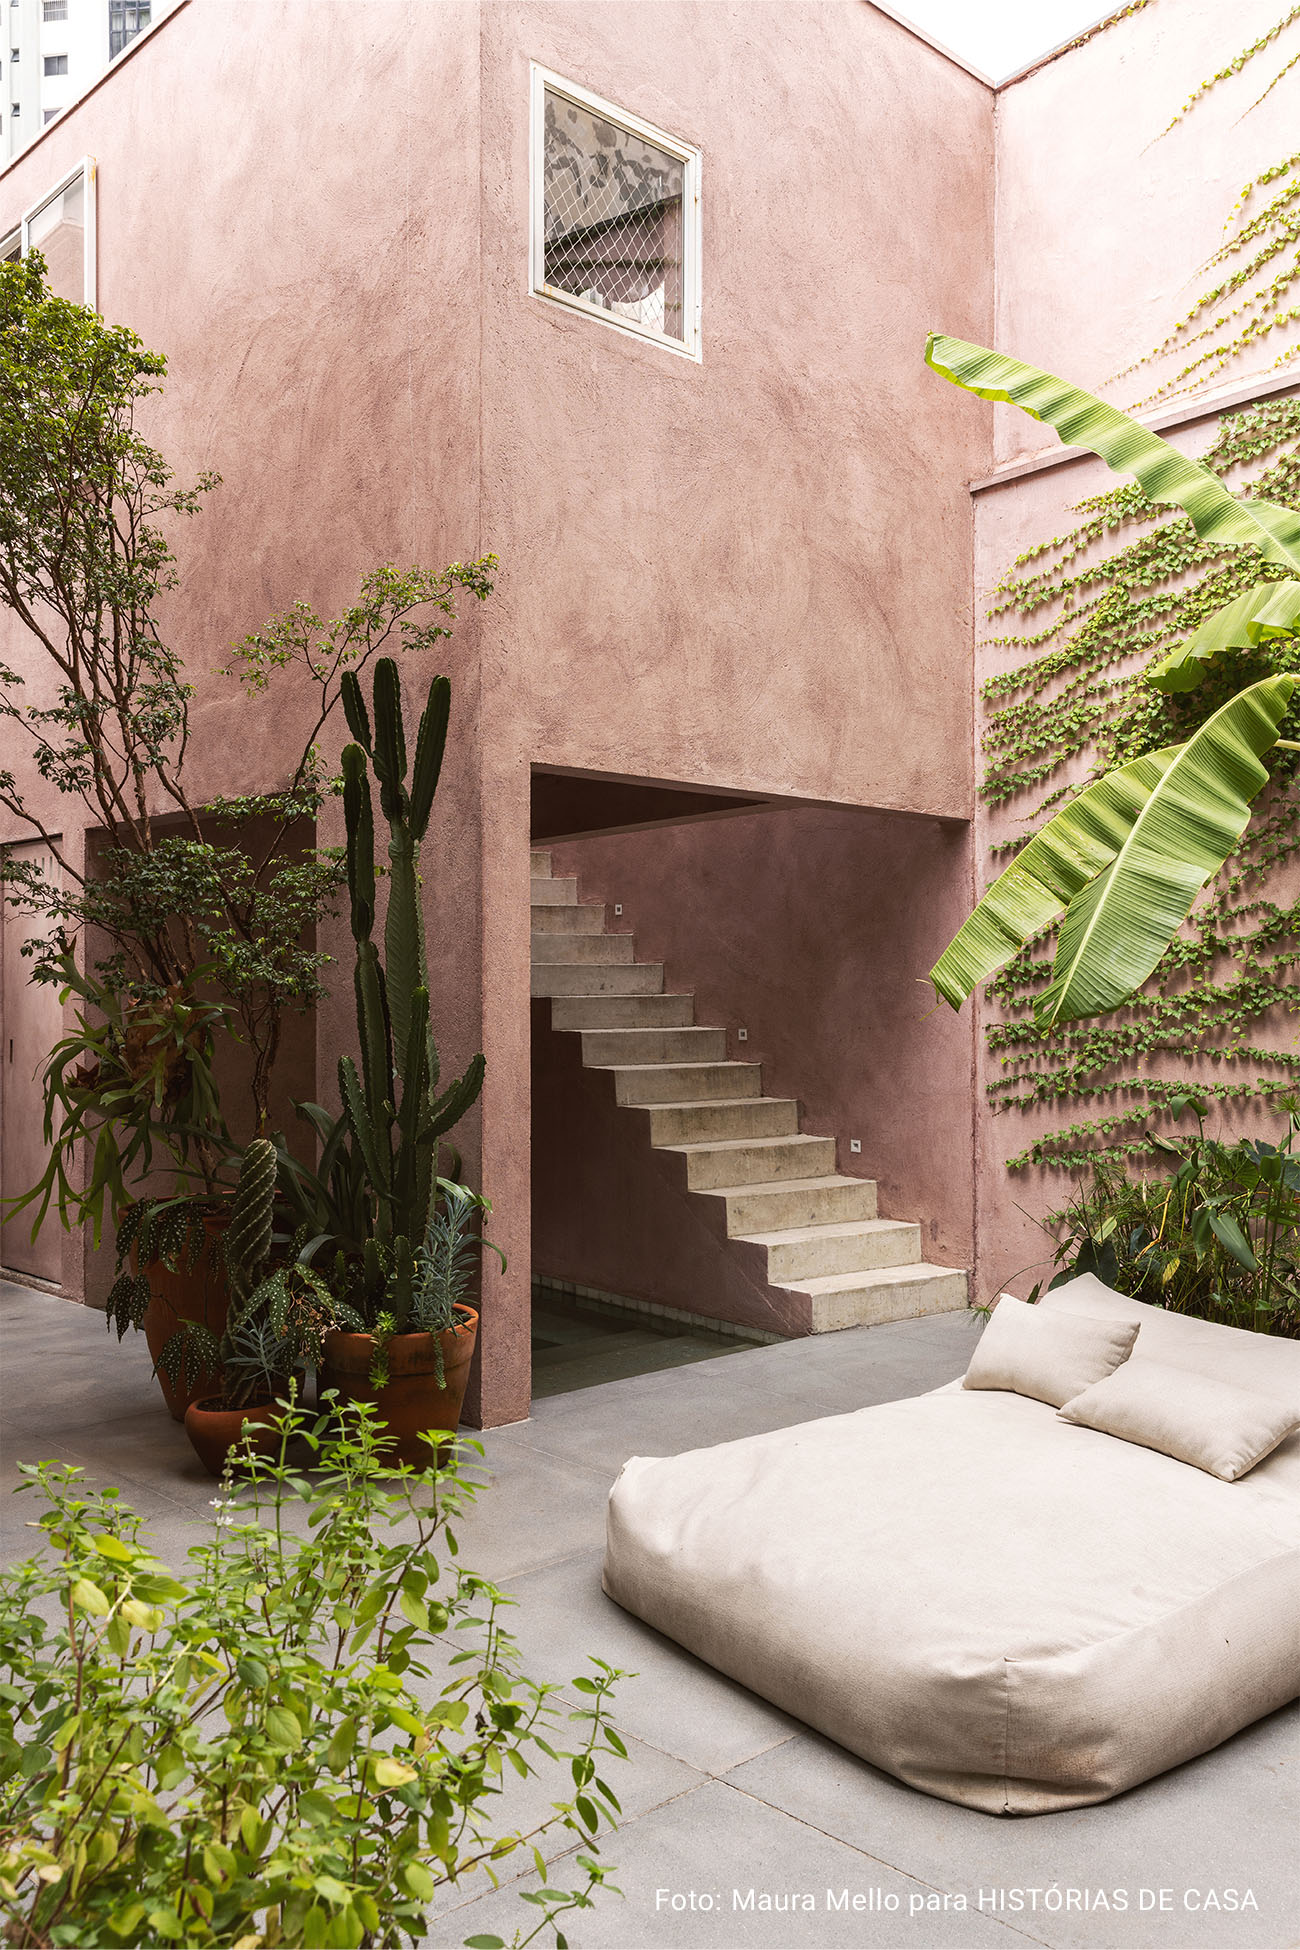 Casa com espaços integrados, muitas obras de arte e área externa cor-de-rosa.